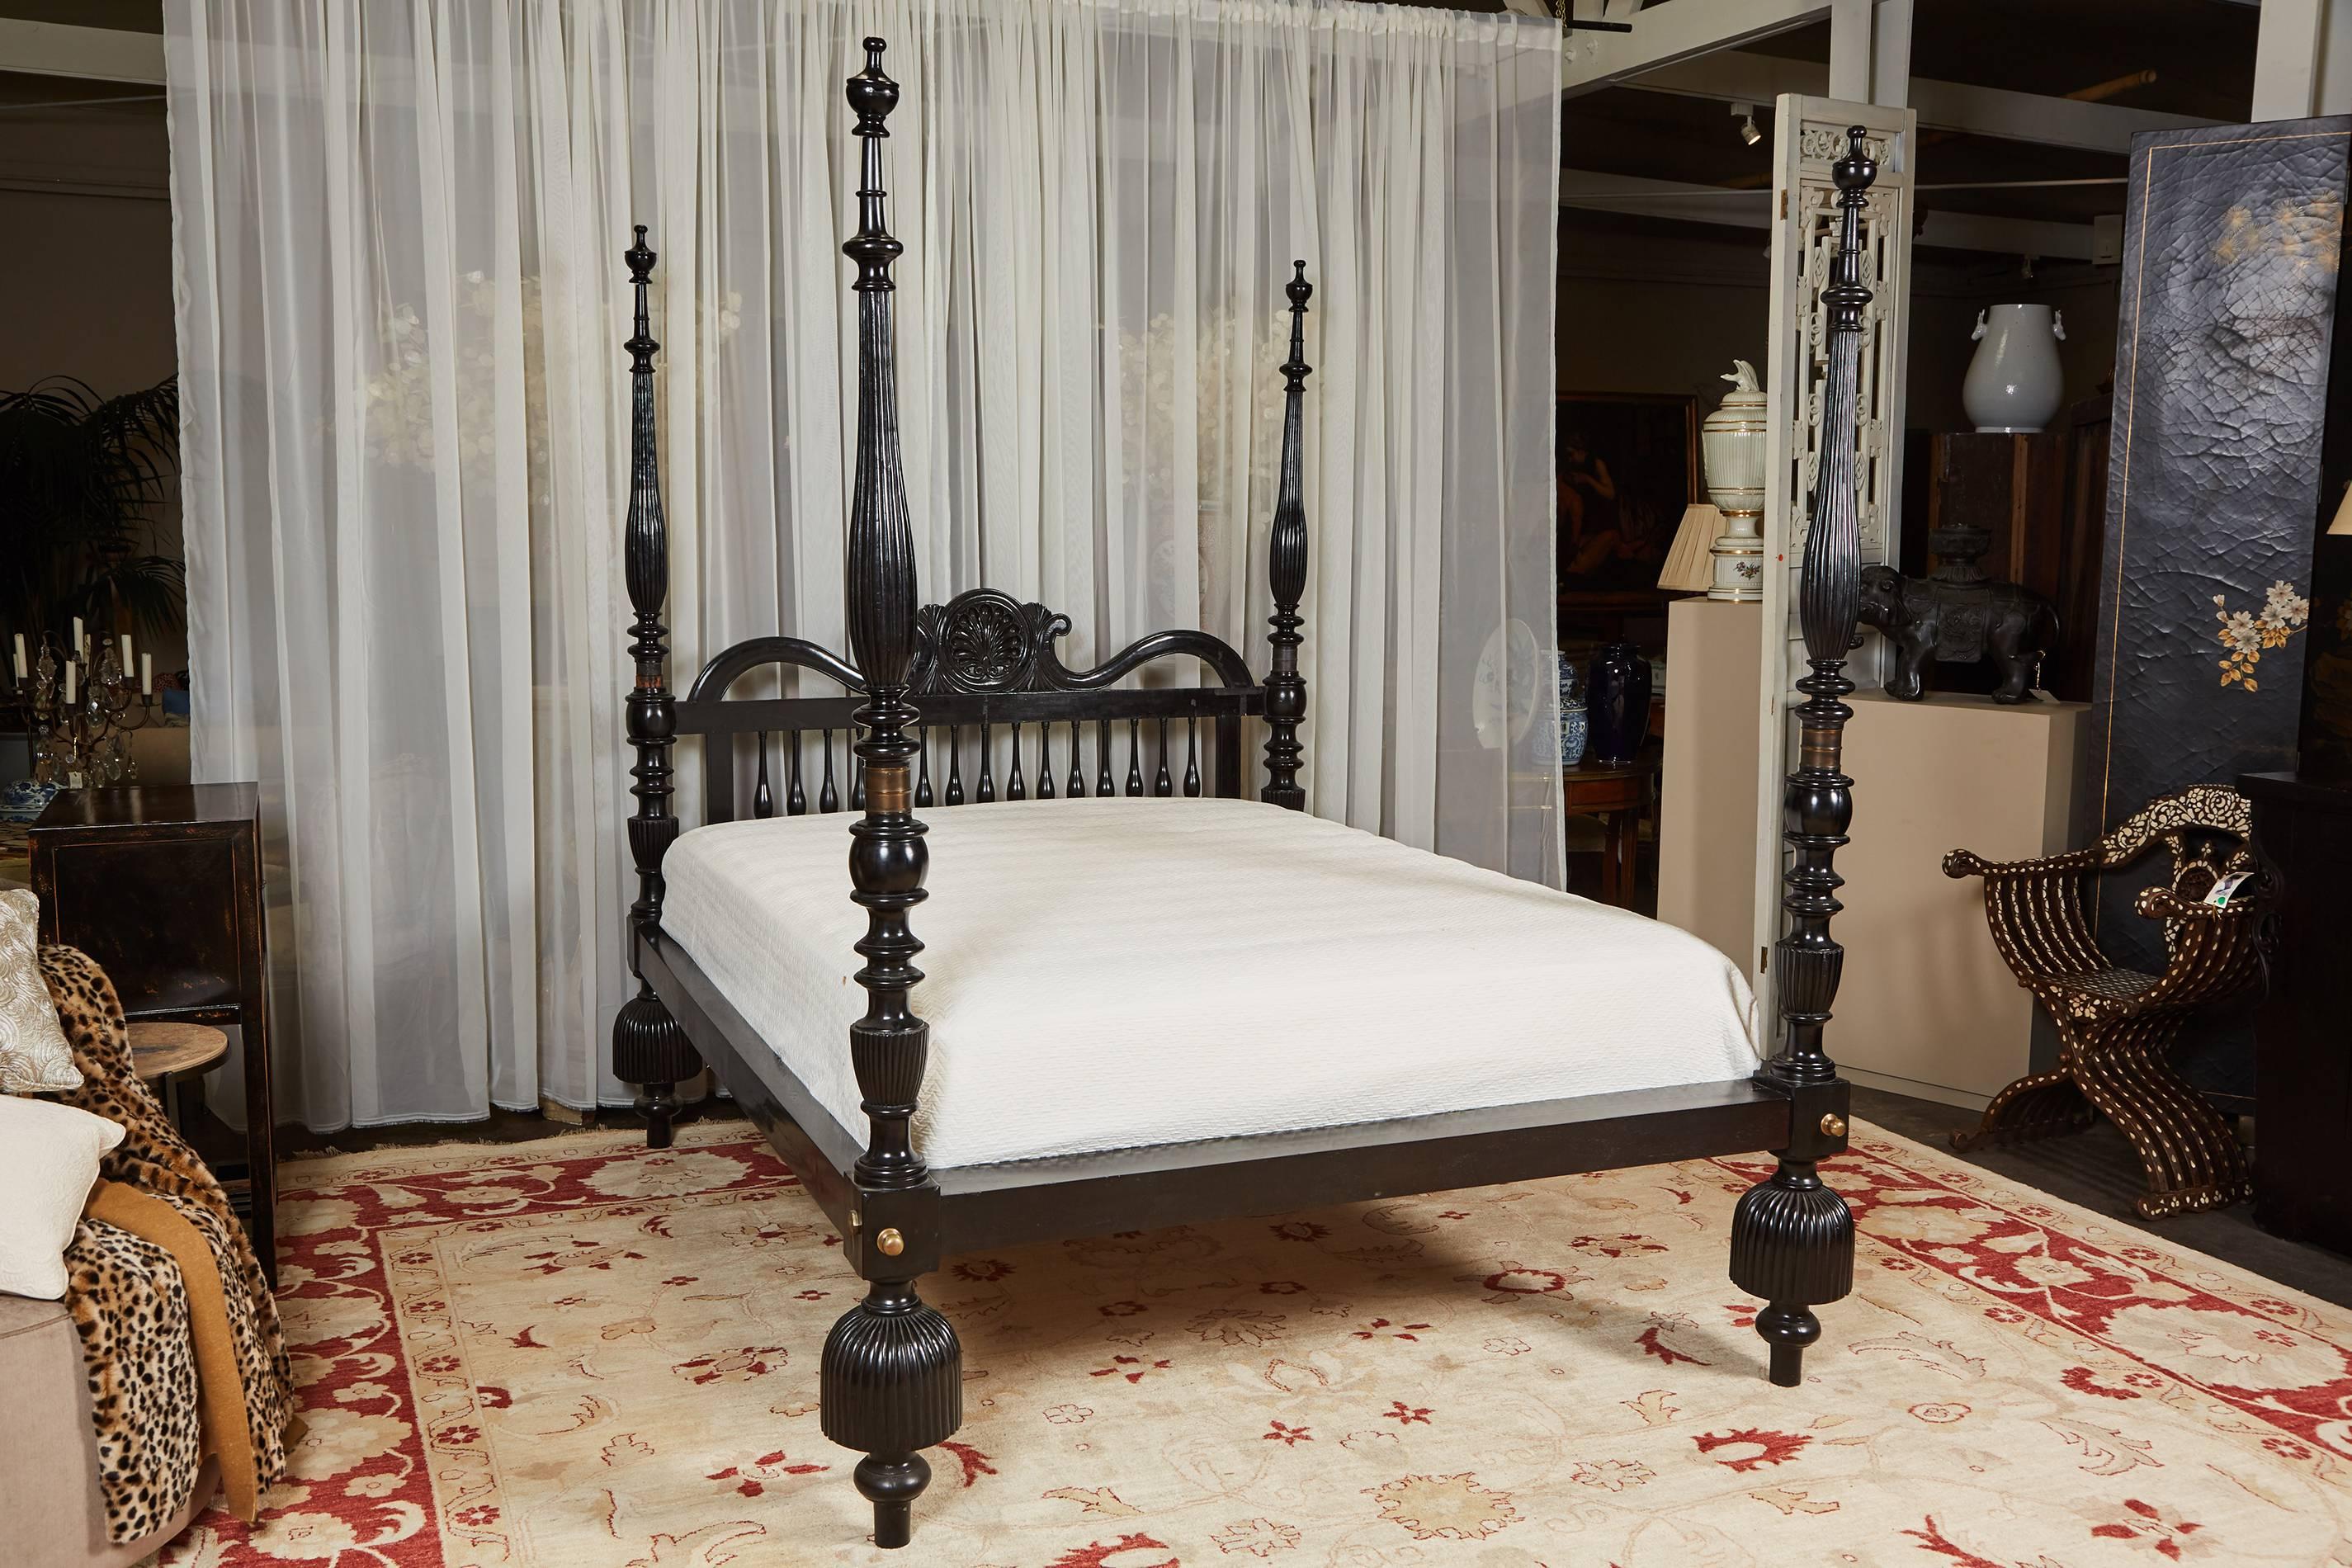 Ein Queen-Size-4-Himmelbett aus Jak-Holz mit ebonisierter Oberfläche. Das Bett verfügt über handgeschnitzte Details, übergroße Füße im Quastenstil und ein Kopfteil mit Muscheldekoration in der Mitte. Zusammengebaut mit gegossenen Messingbeschlägen.